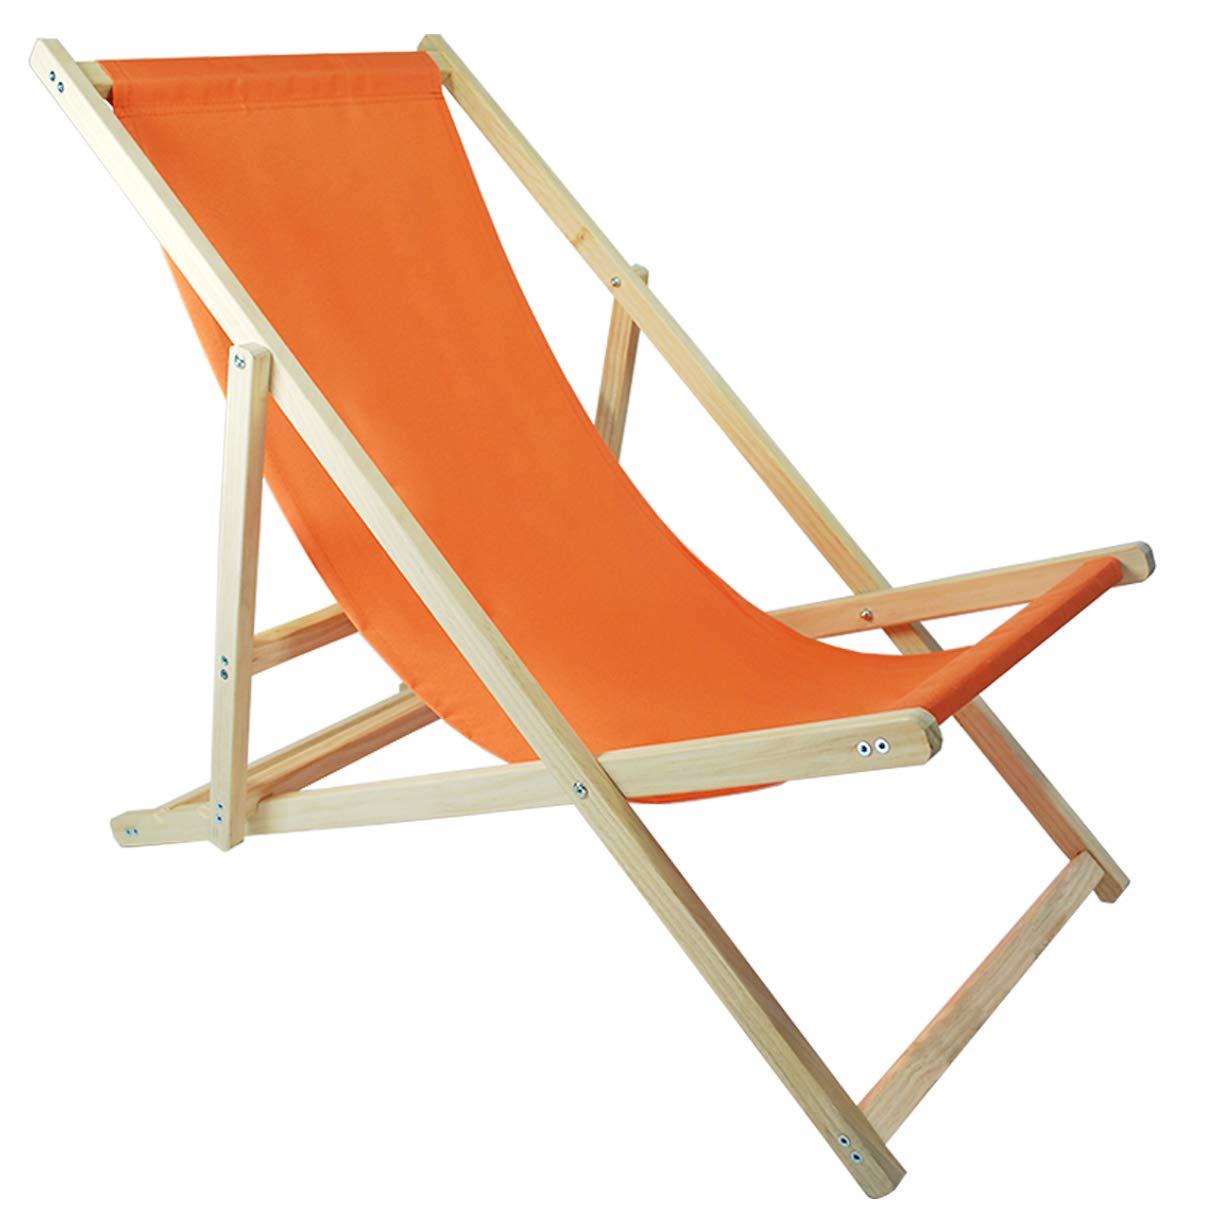 Helo Garten Strand Liegestuhl klappbar aus Holz bis 120 kg belastbar, Strandstuhl aus Kieferholz, 3-Fach verstellbare Lehne, wasserabweisender Bezug Oxford-Gewebe - Sonnenstuhl Farbe: Orange